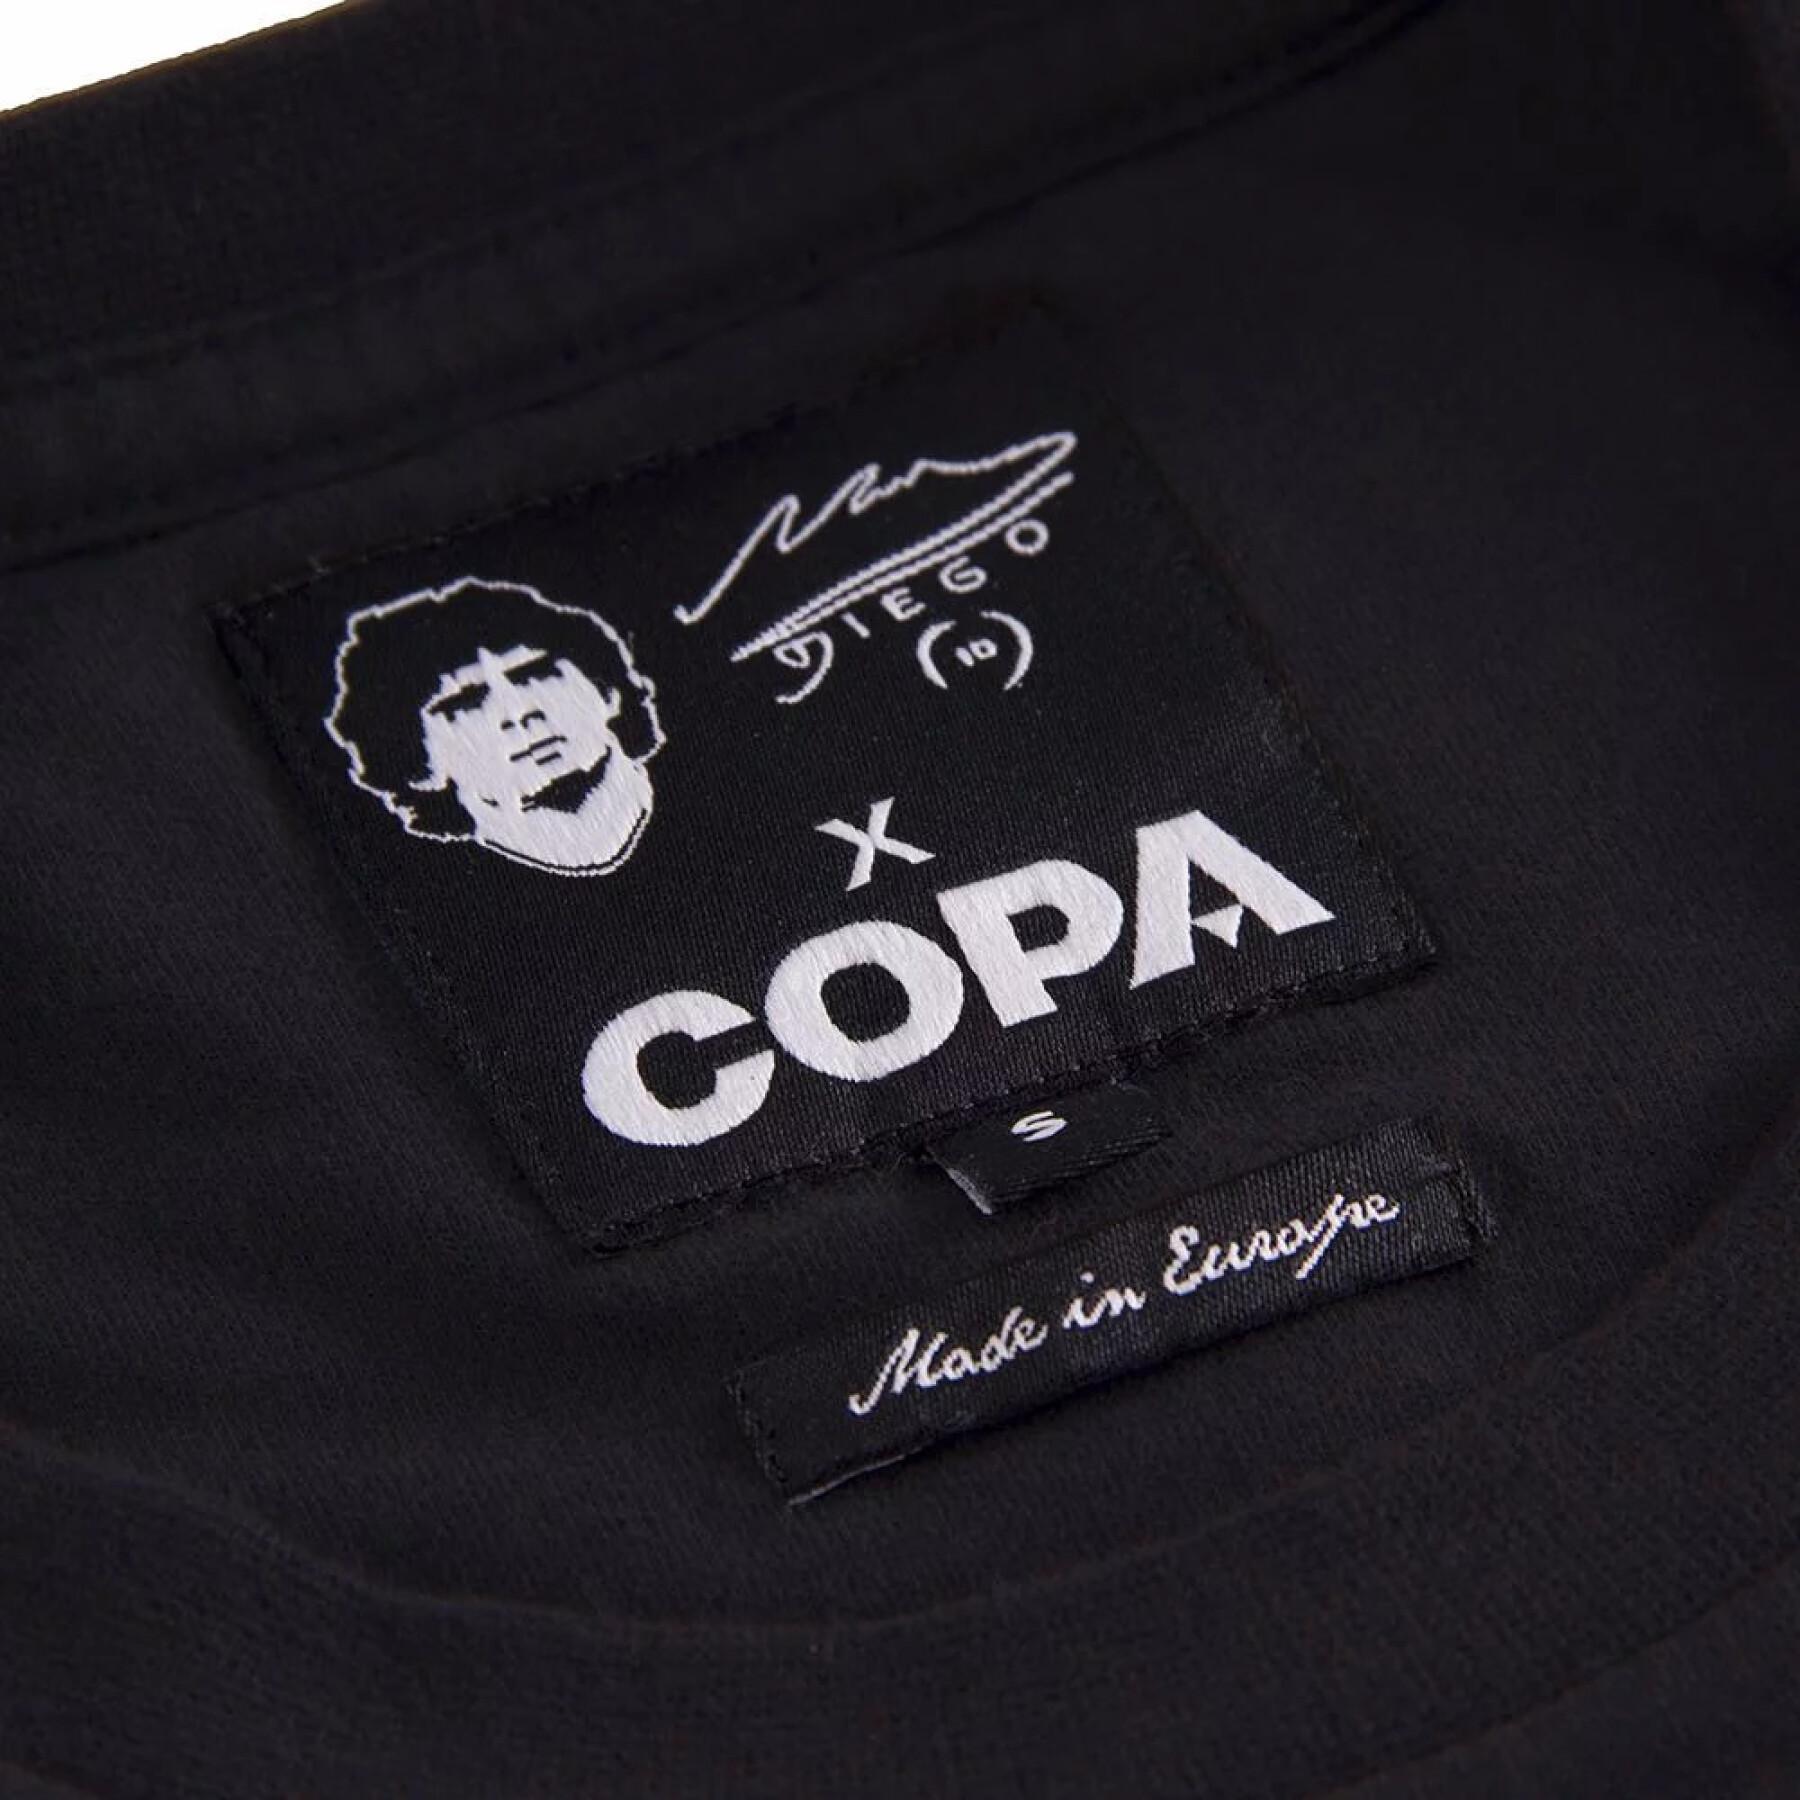 Maglietta Copa Maradona Solo Goal 1986